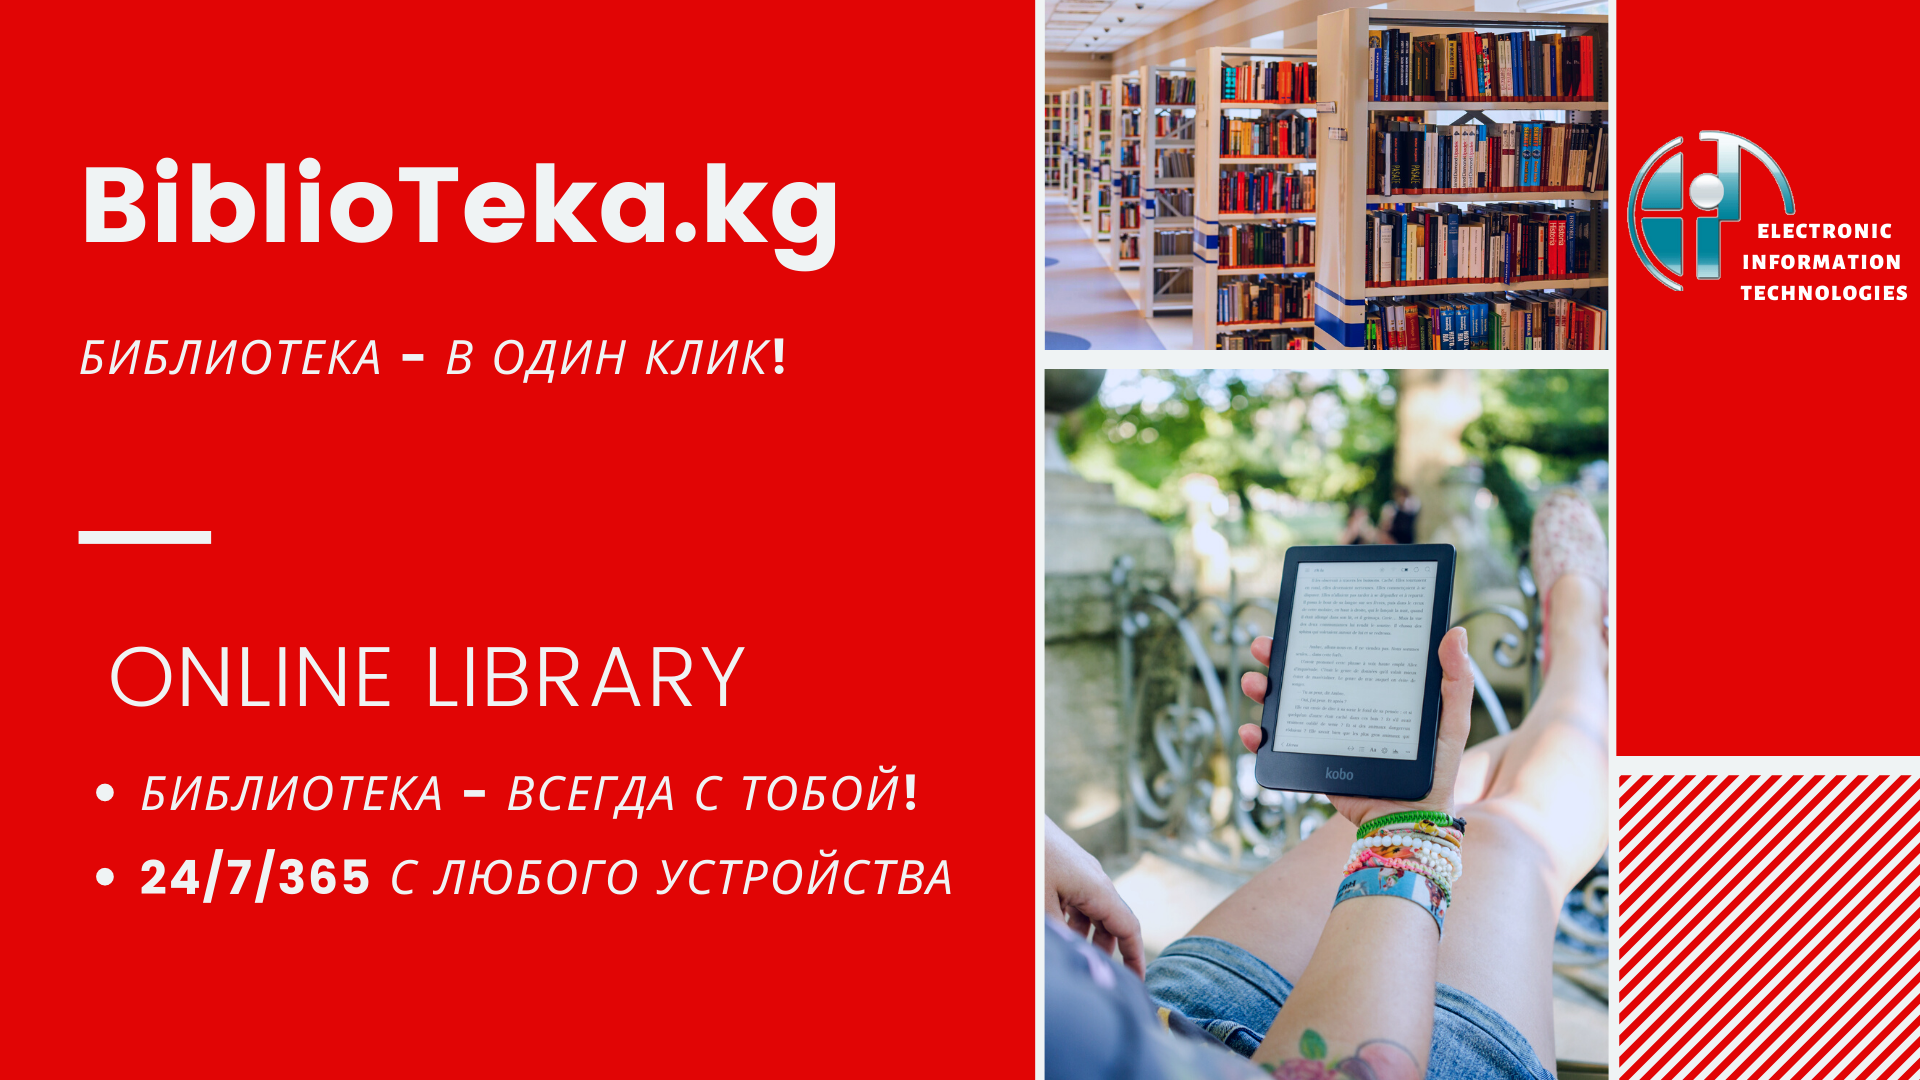 18 декабря 2019 г. состоялась презентационная он-лайн сервиса BiblioTeka.kg для состава руководителей 